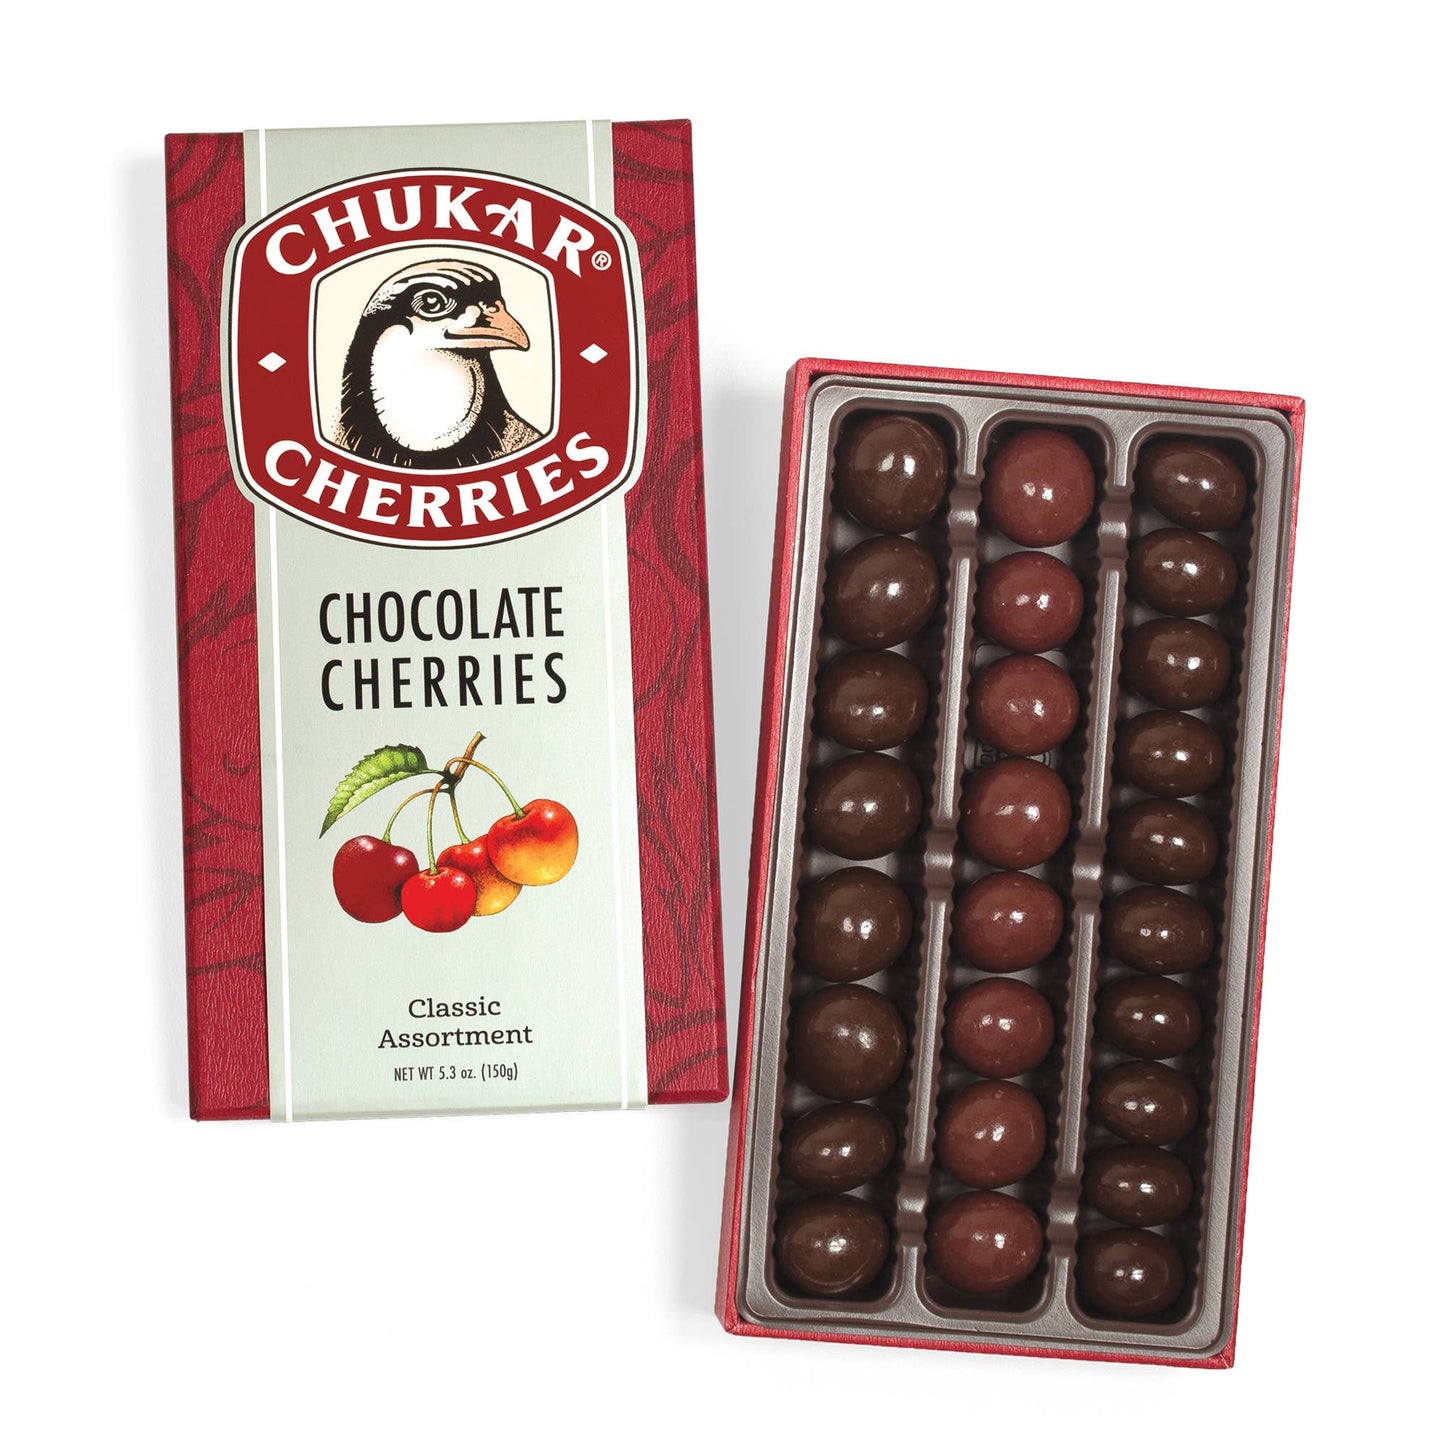 Classic Chocolate Cherry Assortment